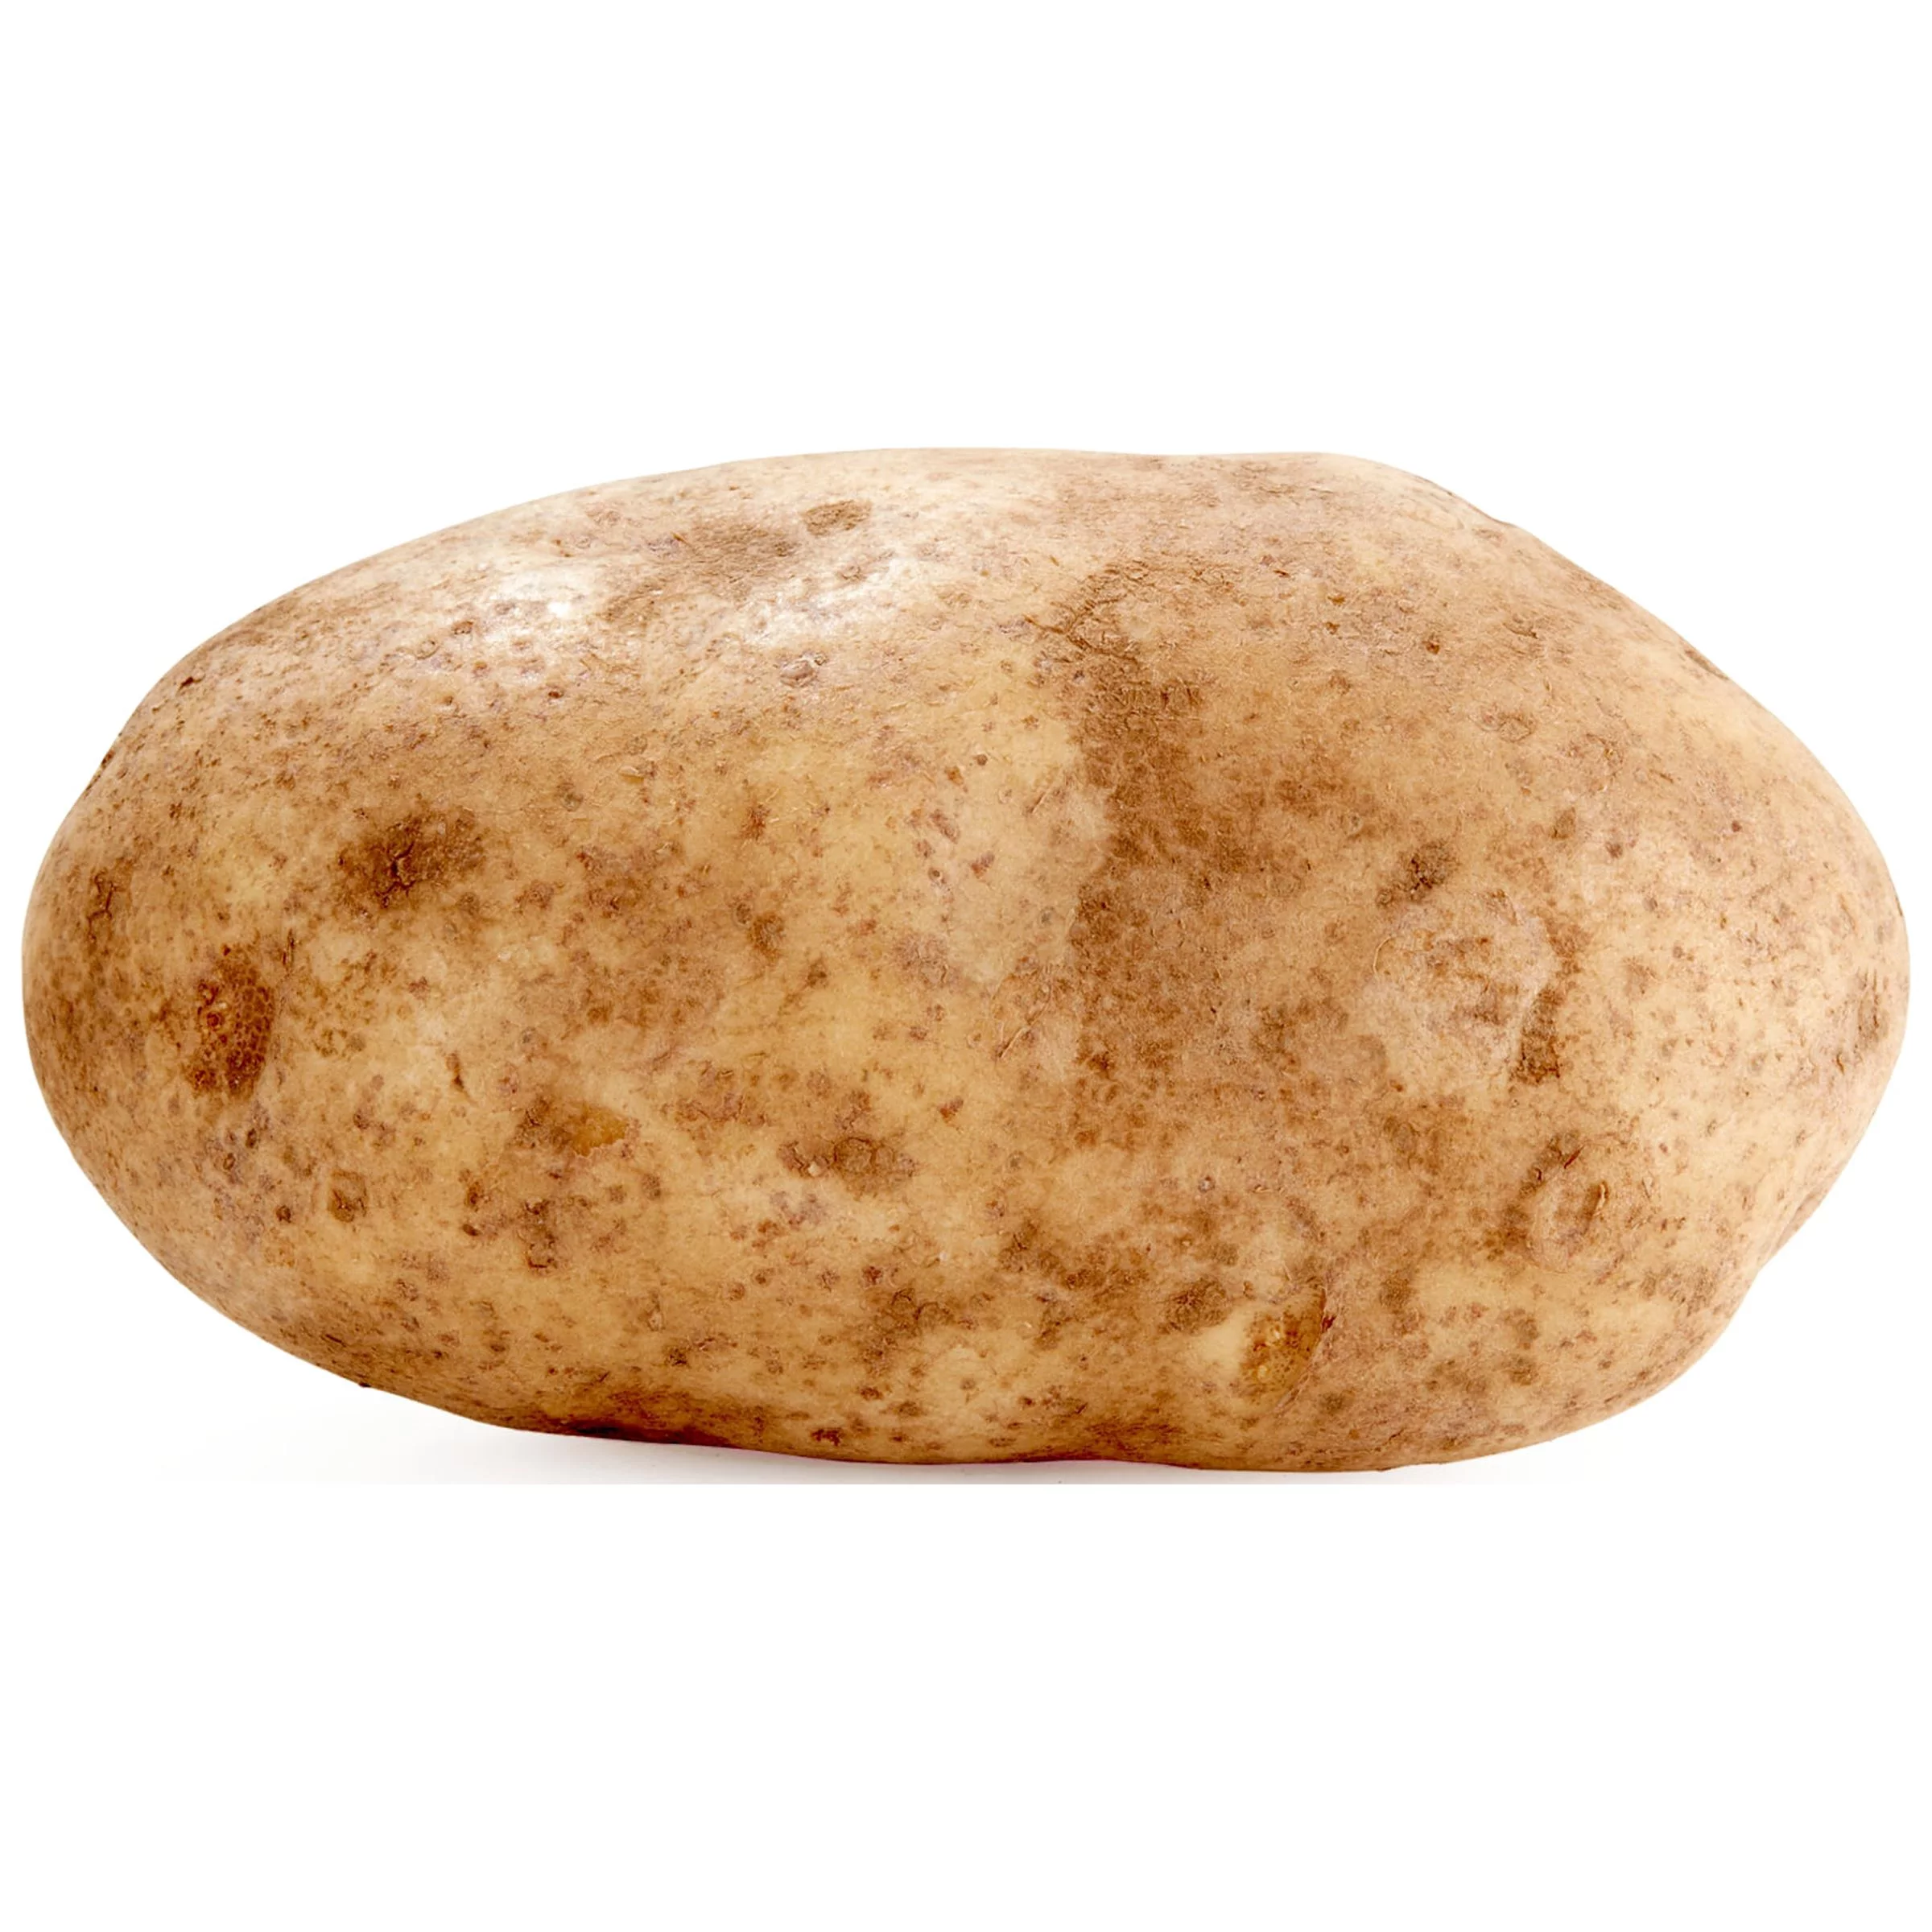 Naked Potato